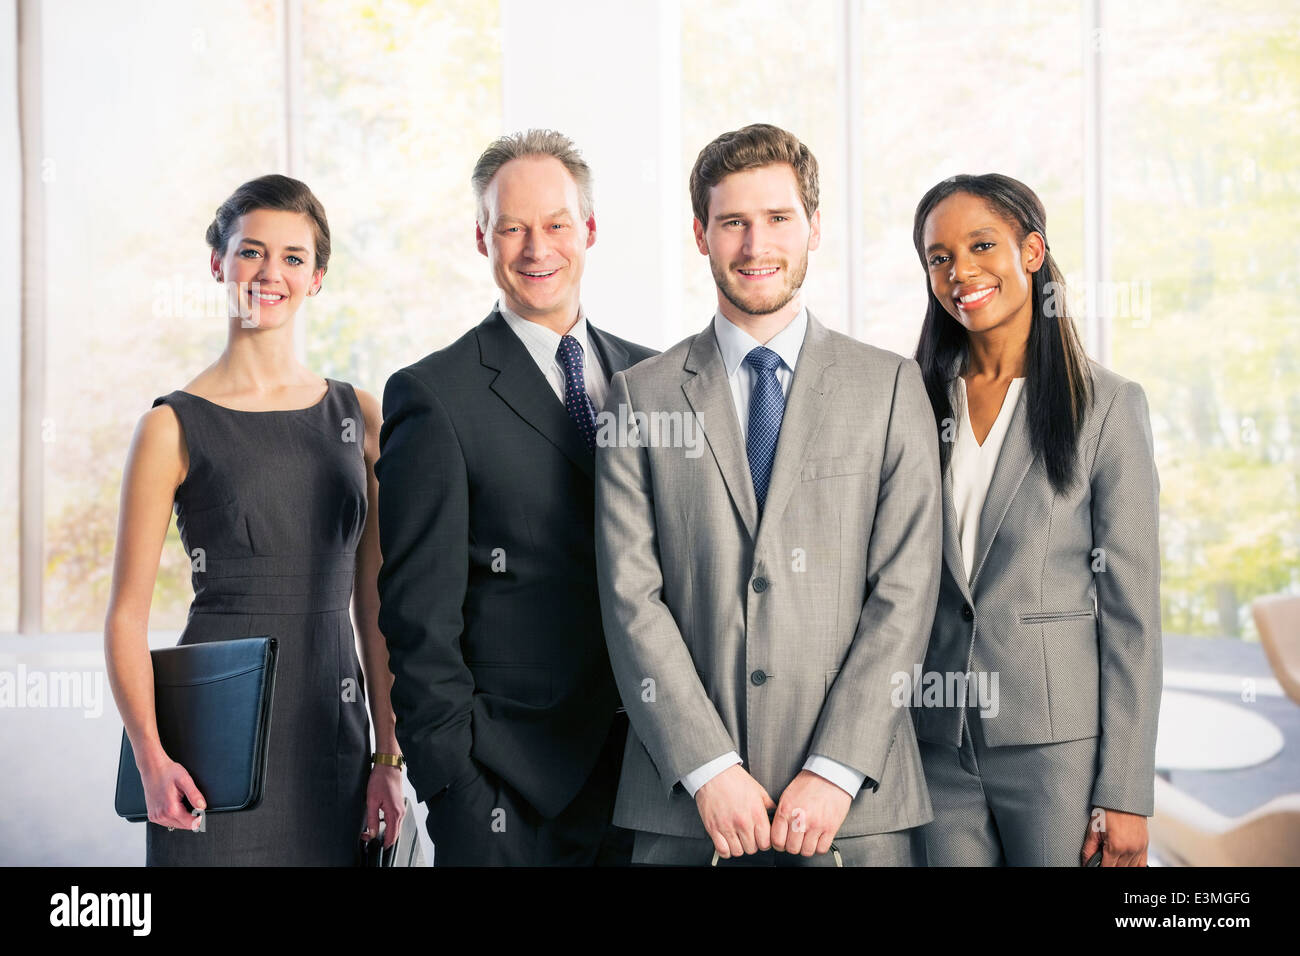 Portrait of business people Banque D'Images